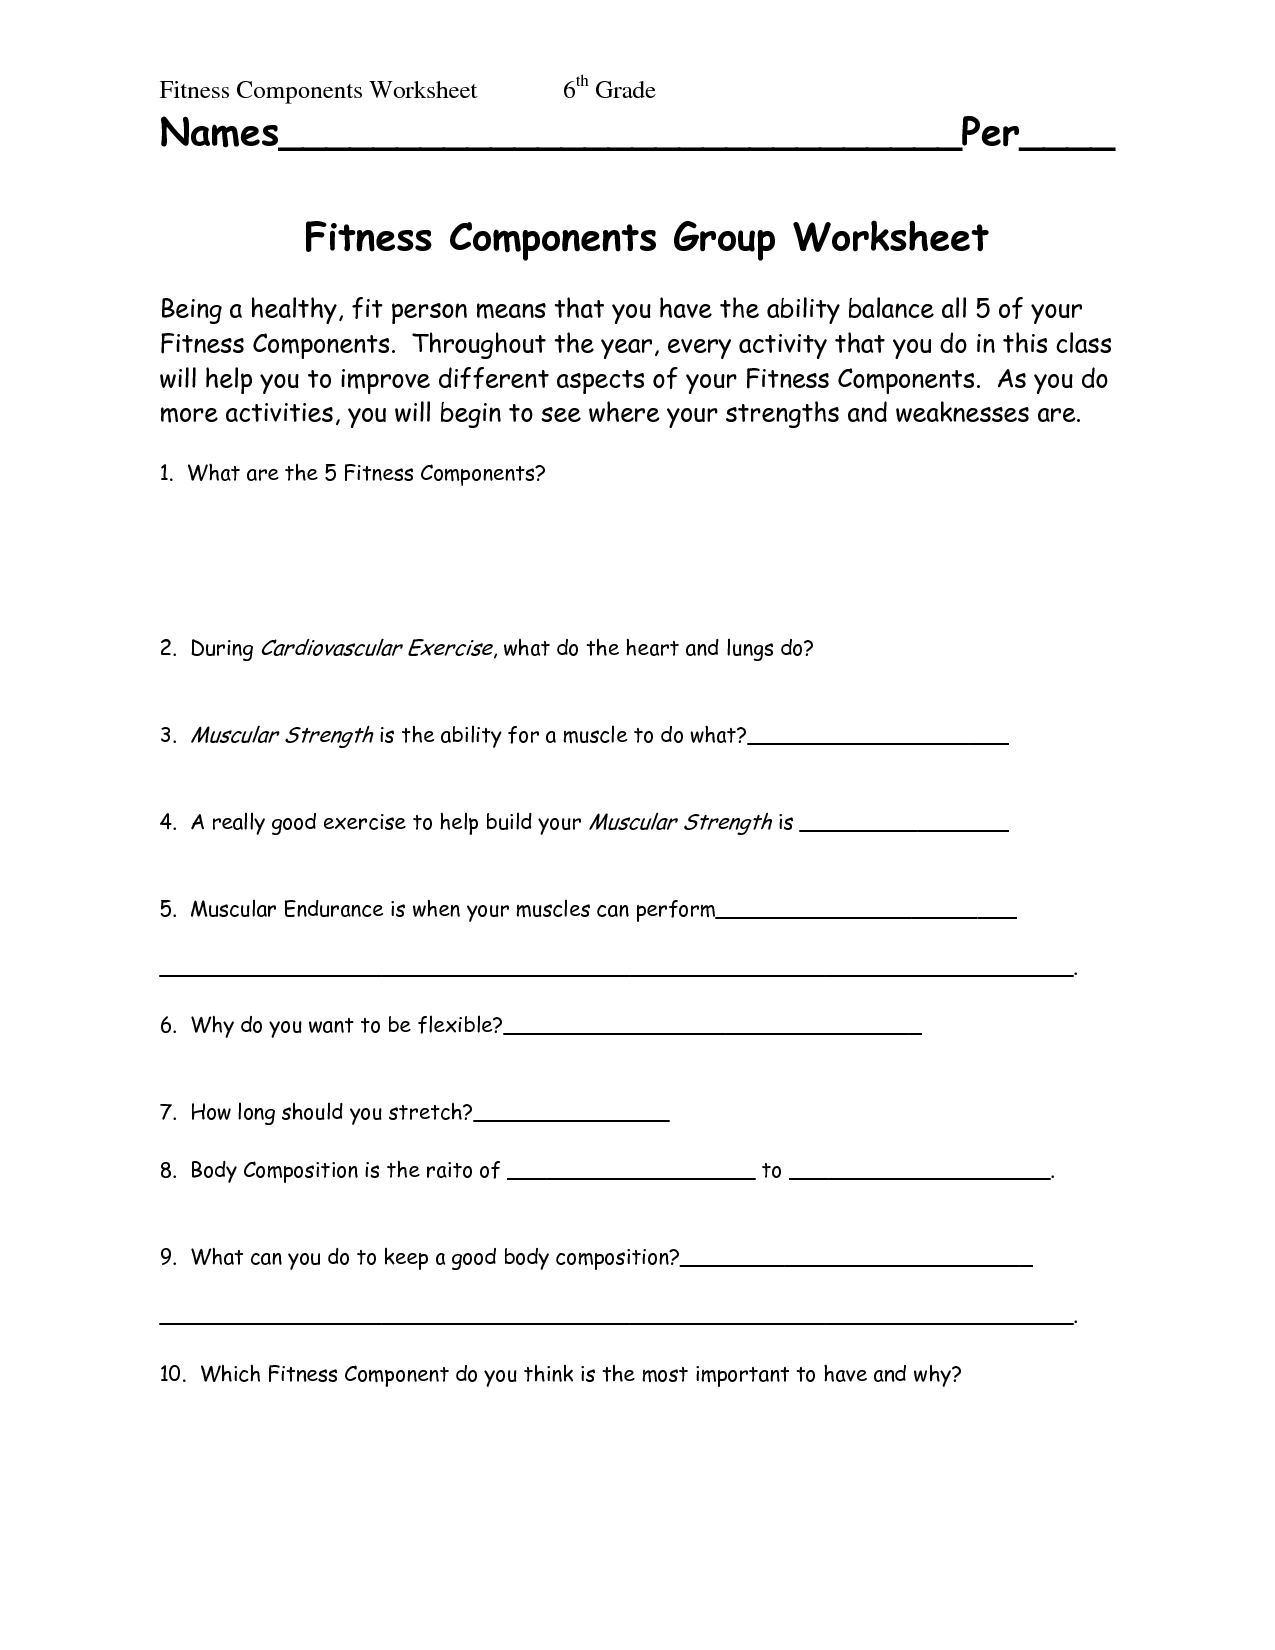 14-worksheets-physical-education-exercise-worksheeto